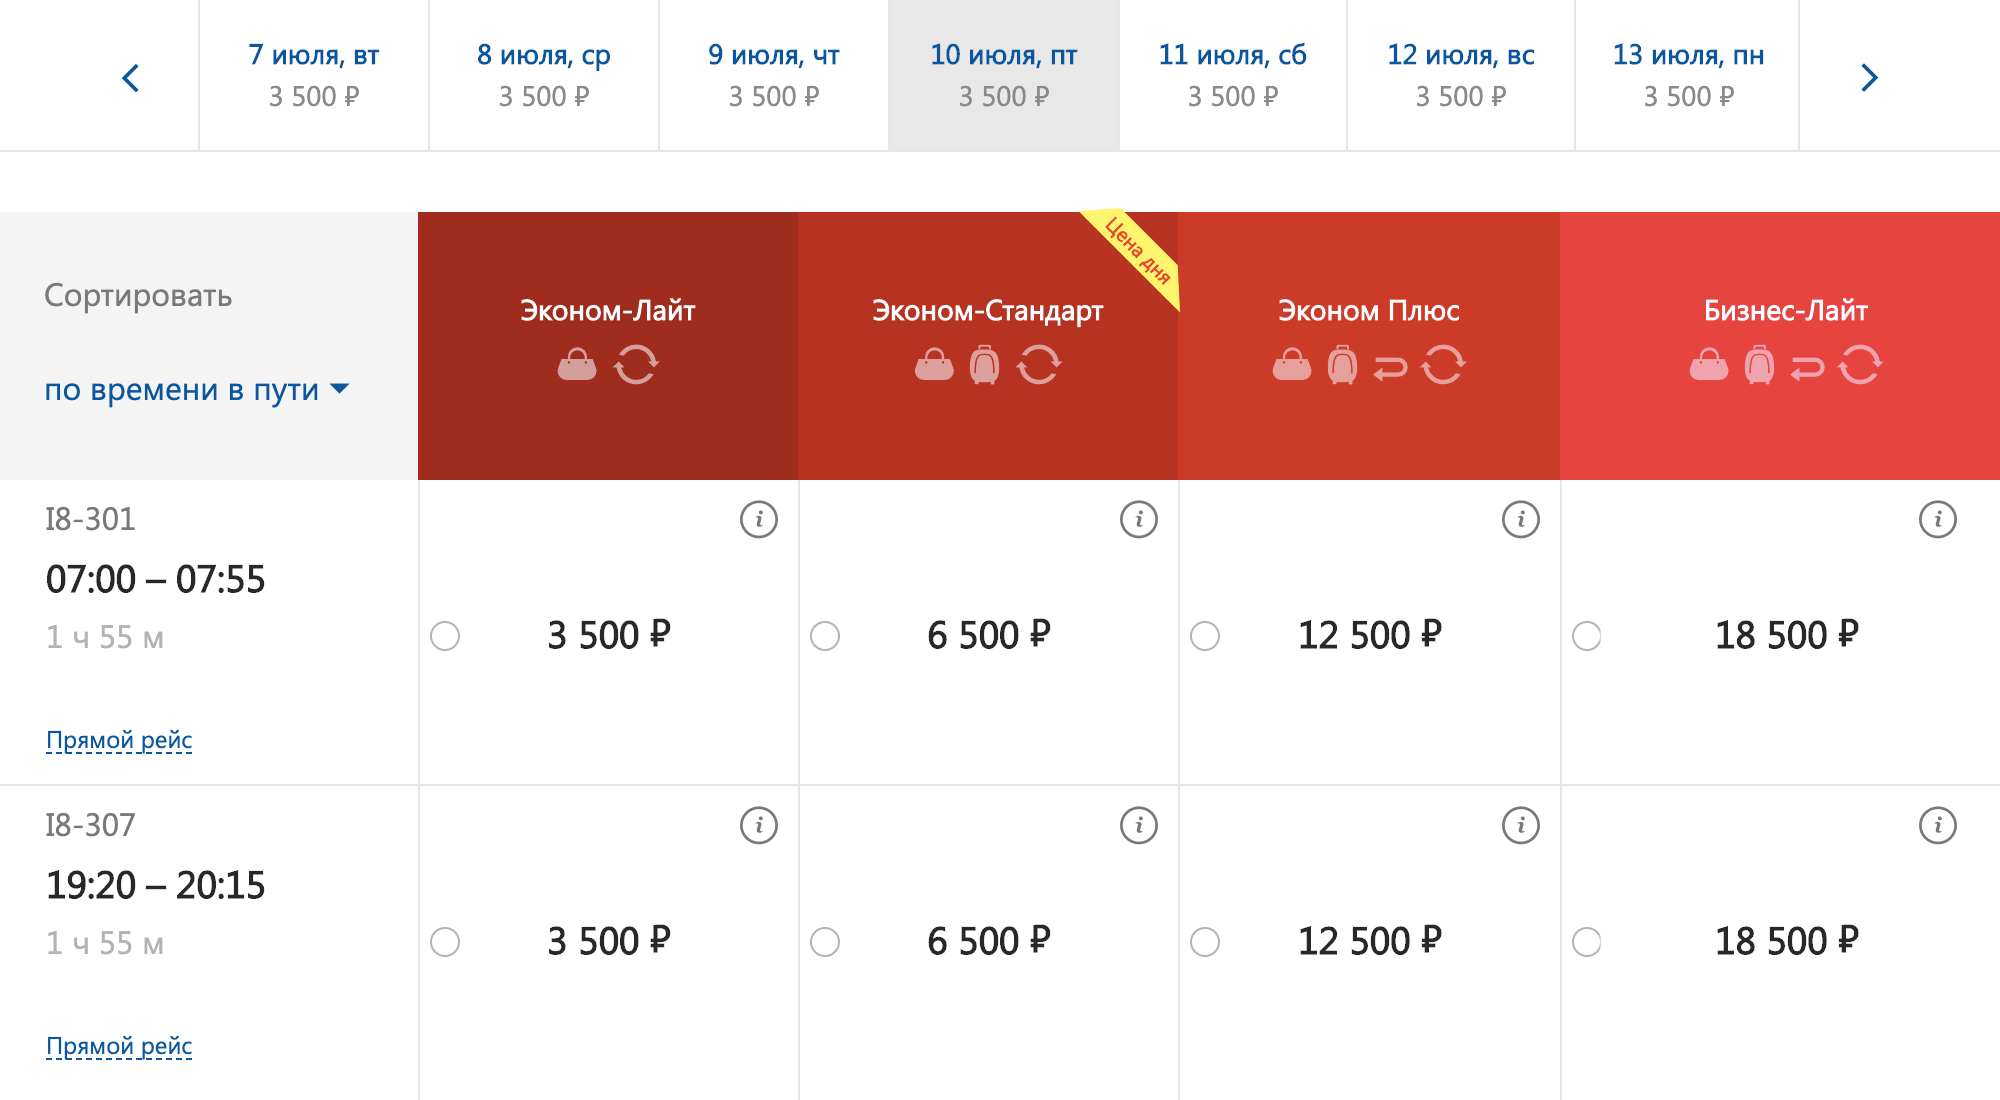 Стоимость билетов на самолет Ижевск — Москва на сайте «Ижавиа»